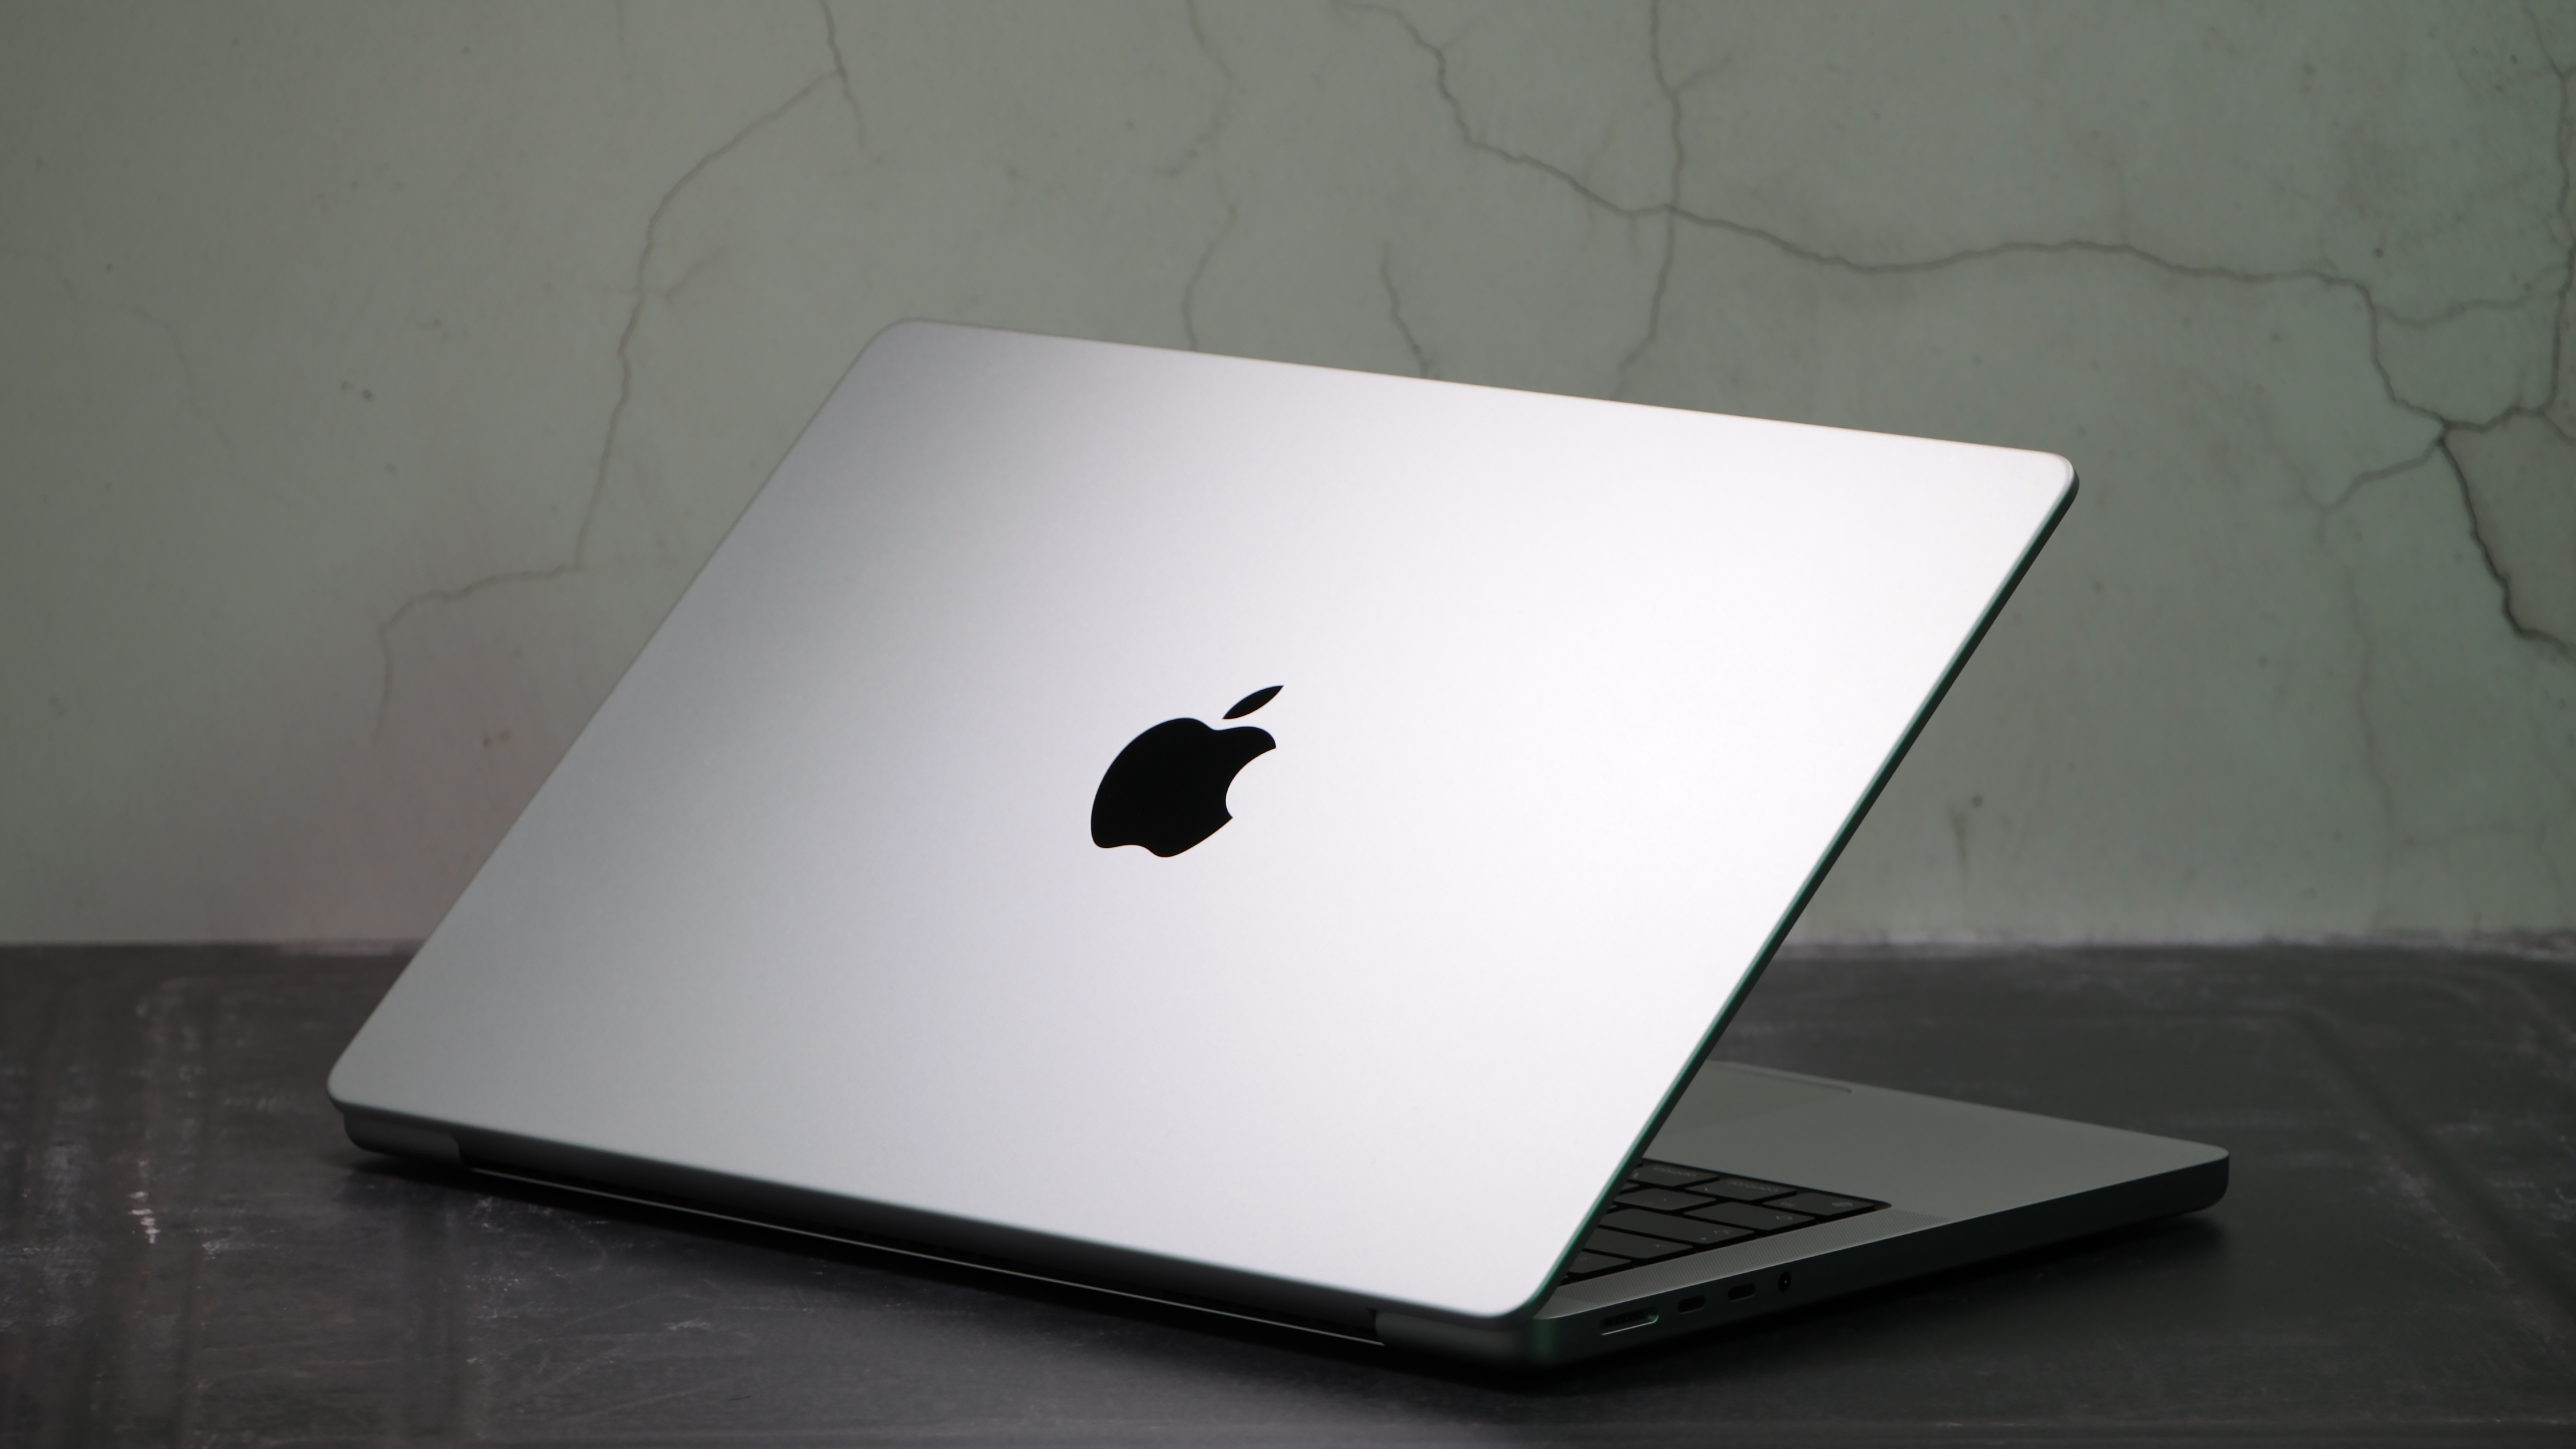 По слухам, M3 MacBook Pro может быть продан как решение Apple для отслеживания продаж Mac